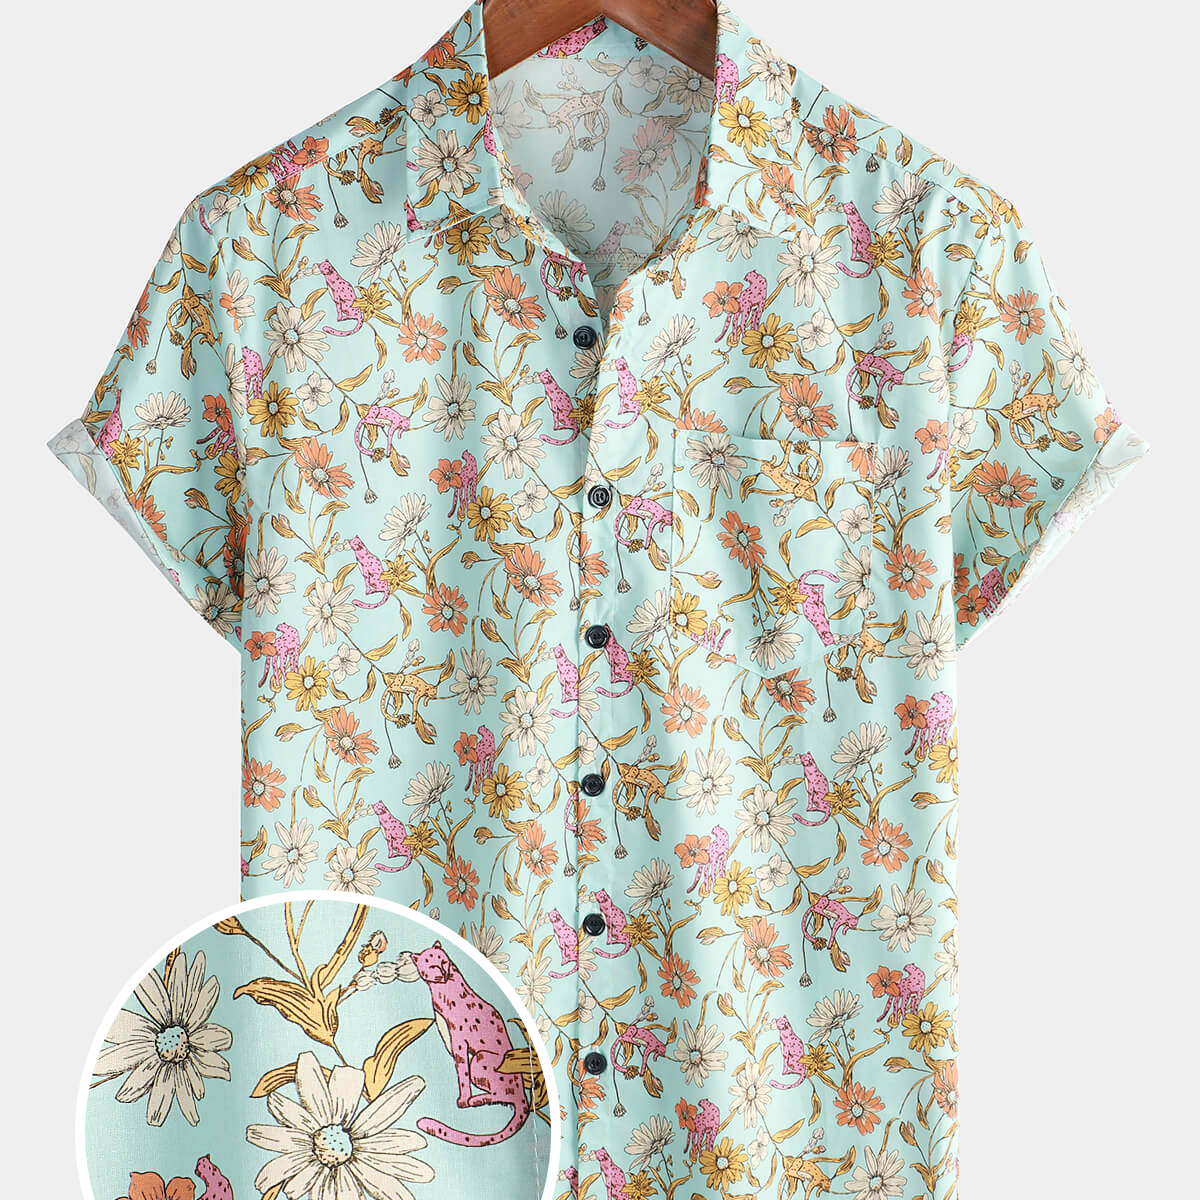 Men's Floral Cotton Daisy Button Up Flower Short Sleeve Shirt